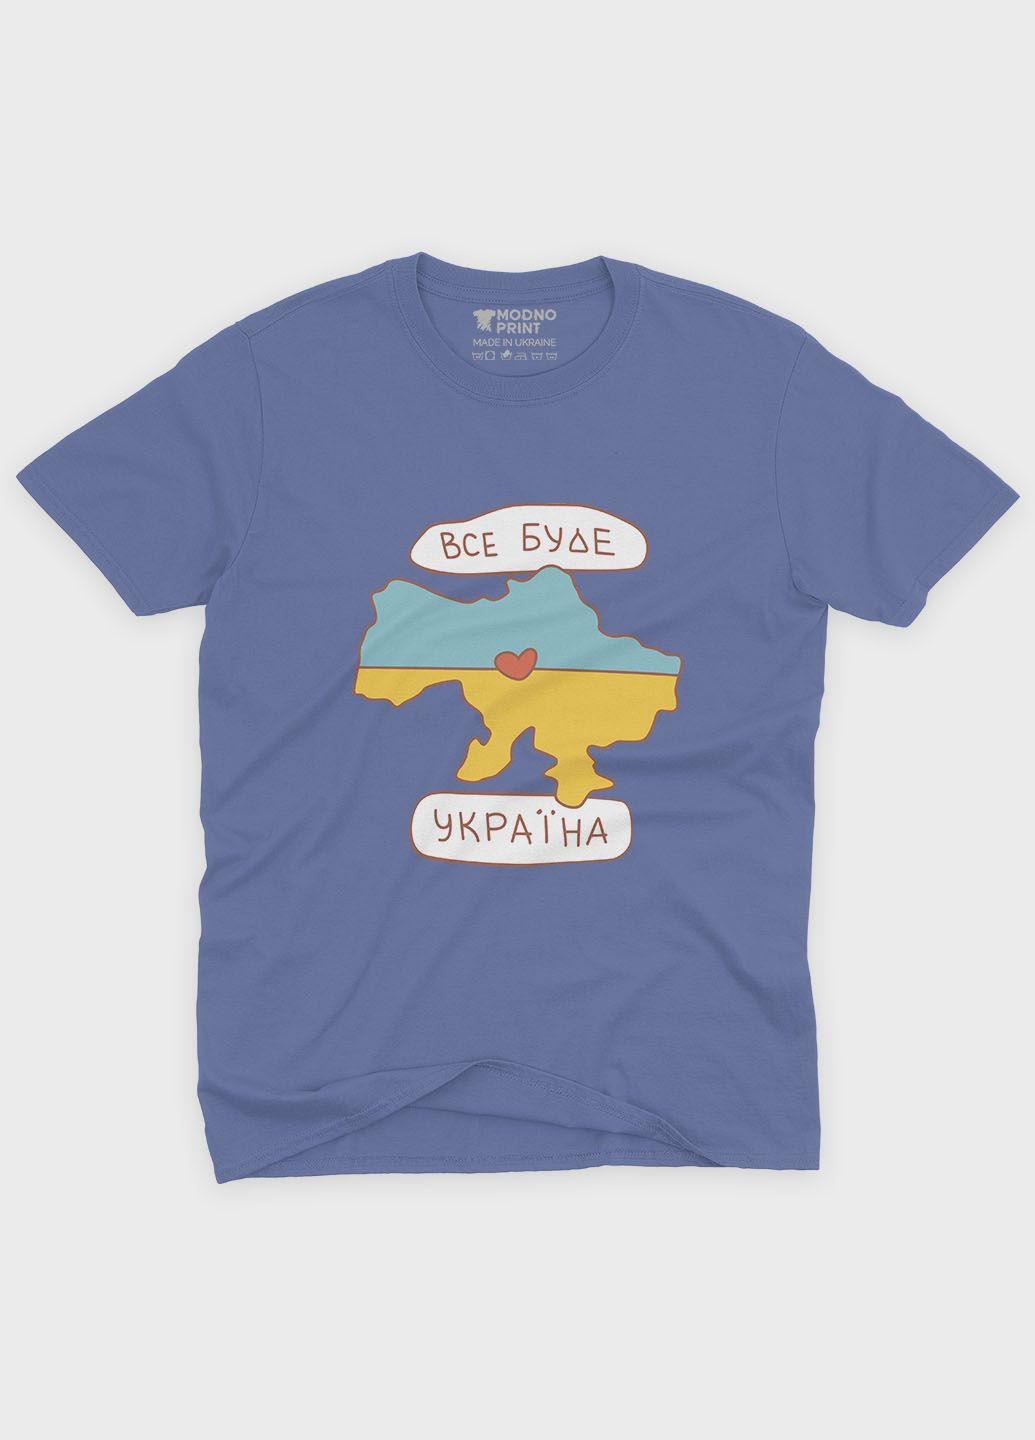 Темно-голубая летняя женская футболка с патриотическим принтом все будет украина (ts001-5-dmb-005-1-134-f) Modno